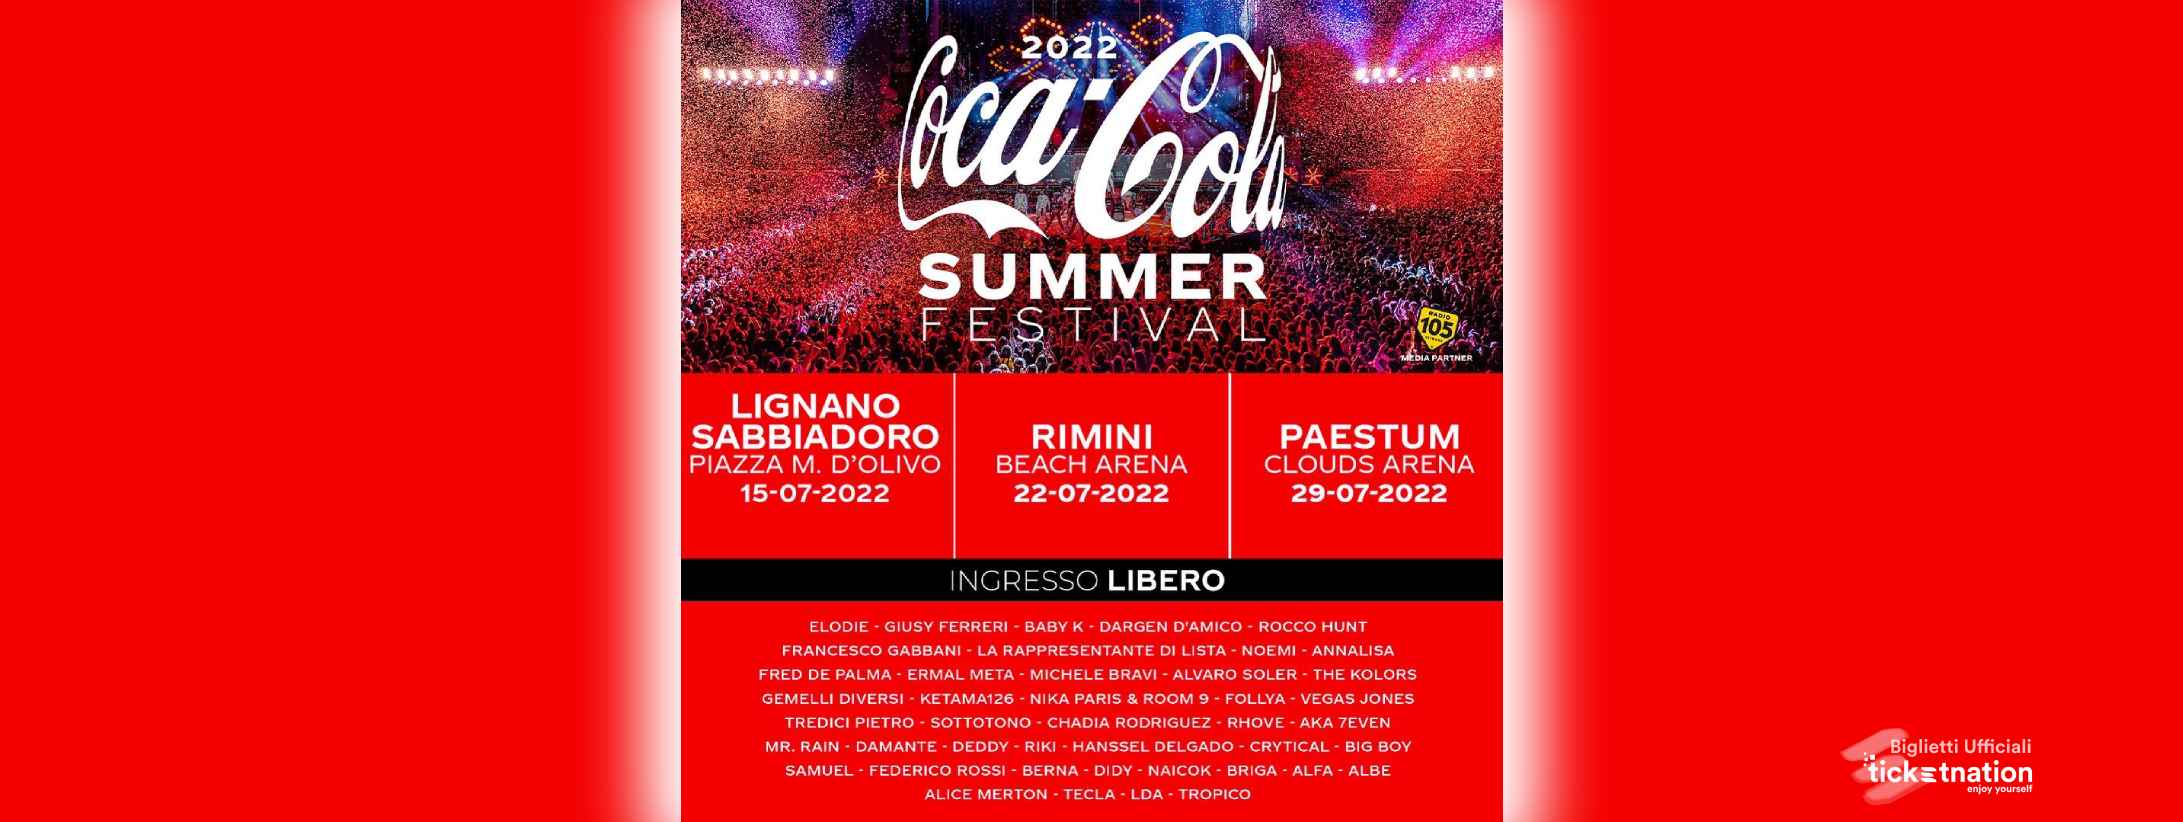 Coca Cola Summer Festival 22 Luglio 2022